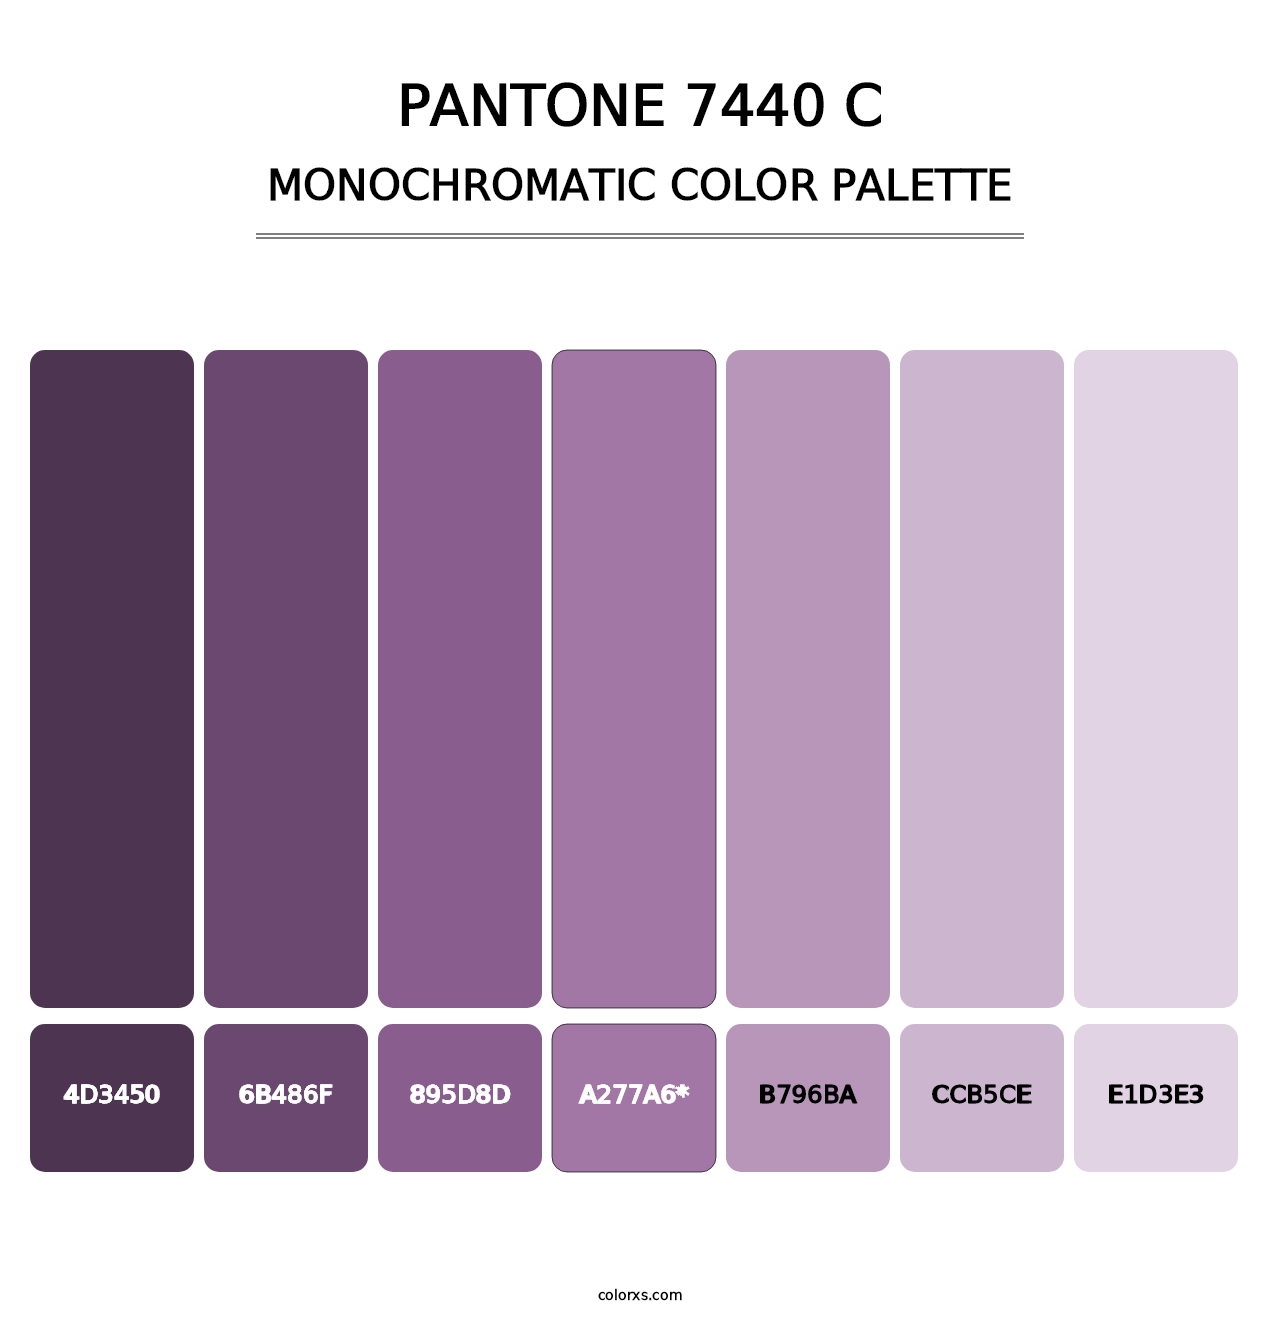 PANTONE 7440 C - Monochromatic Color Palette